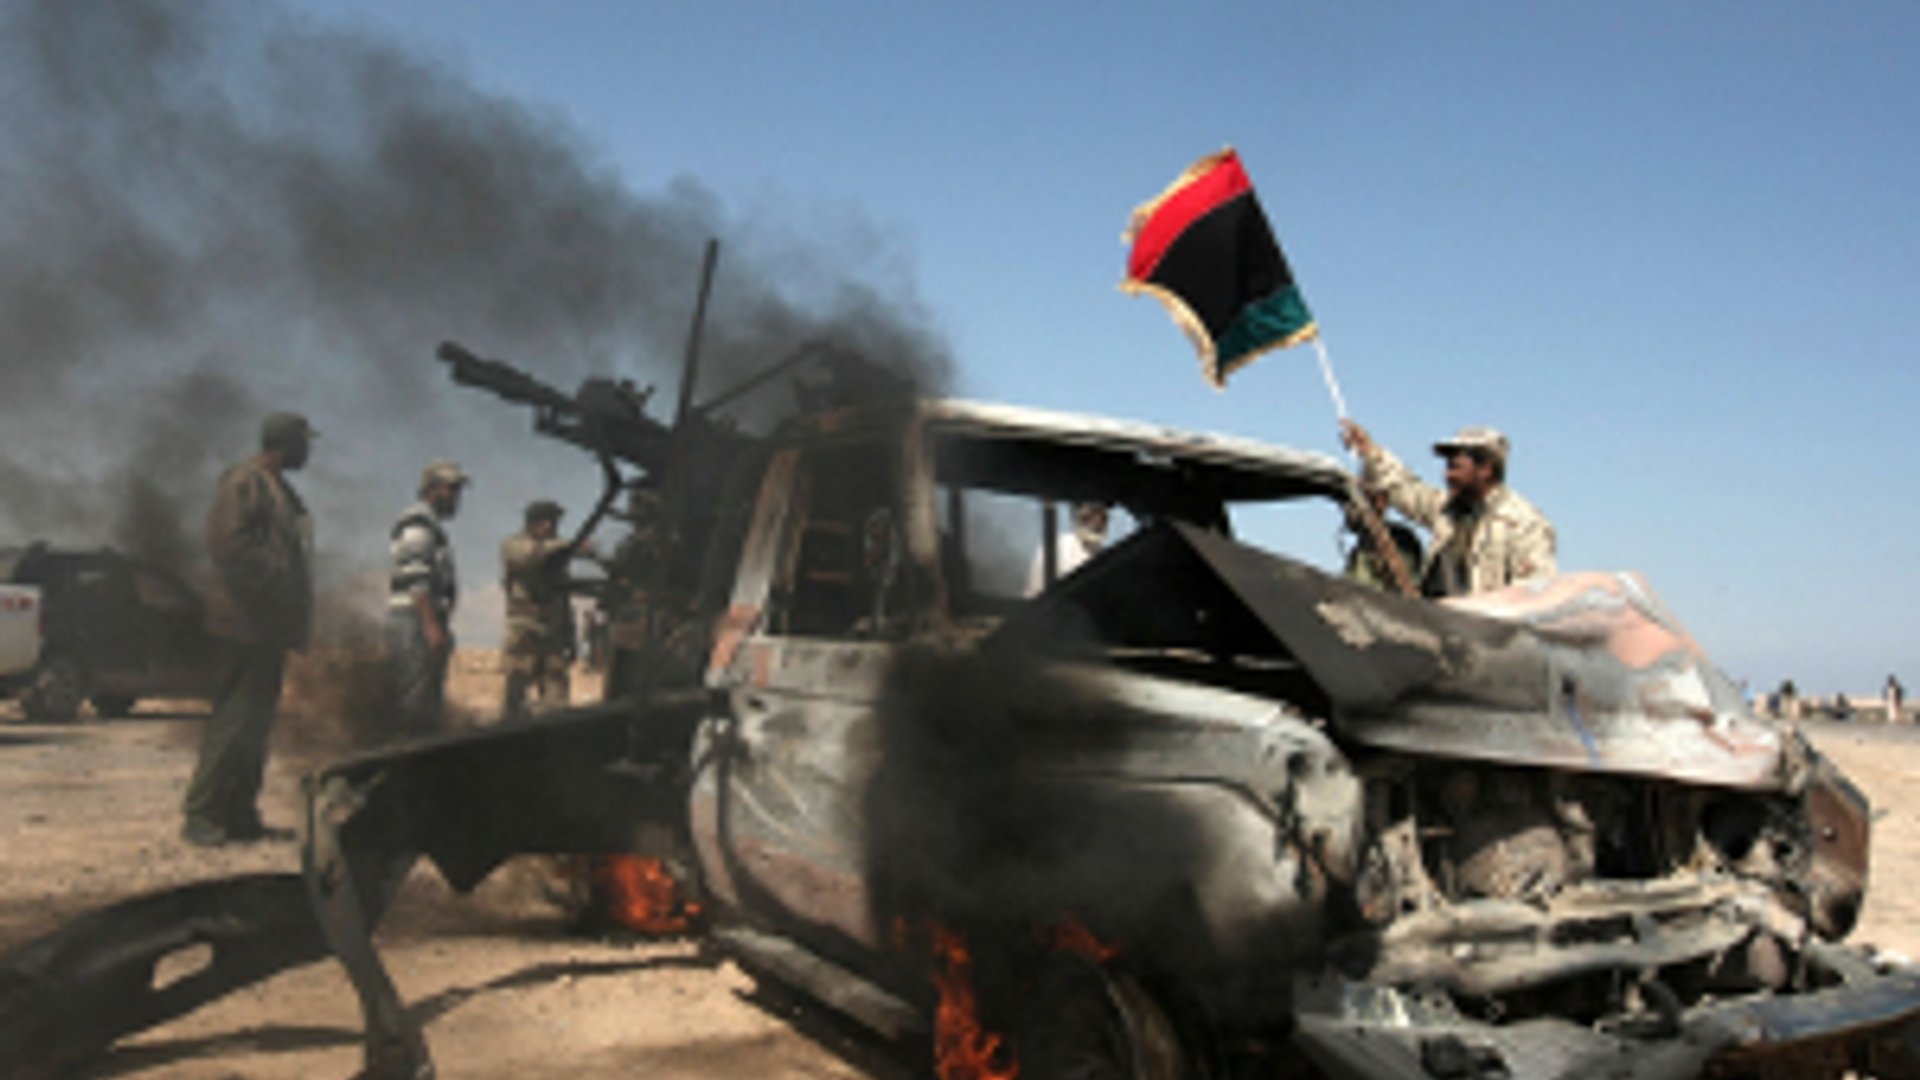 ANP-Libië_navo_aanval_op_rebellen300.jpg